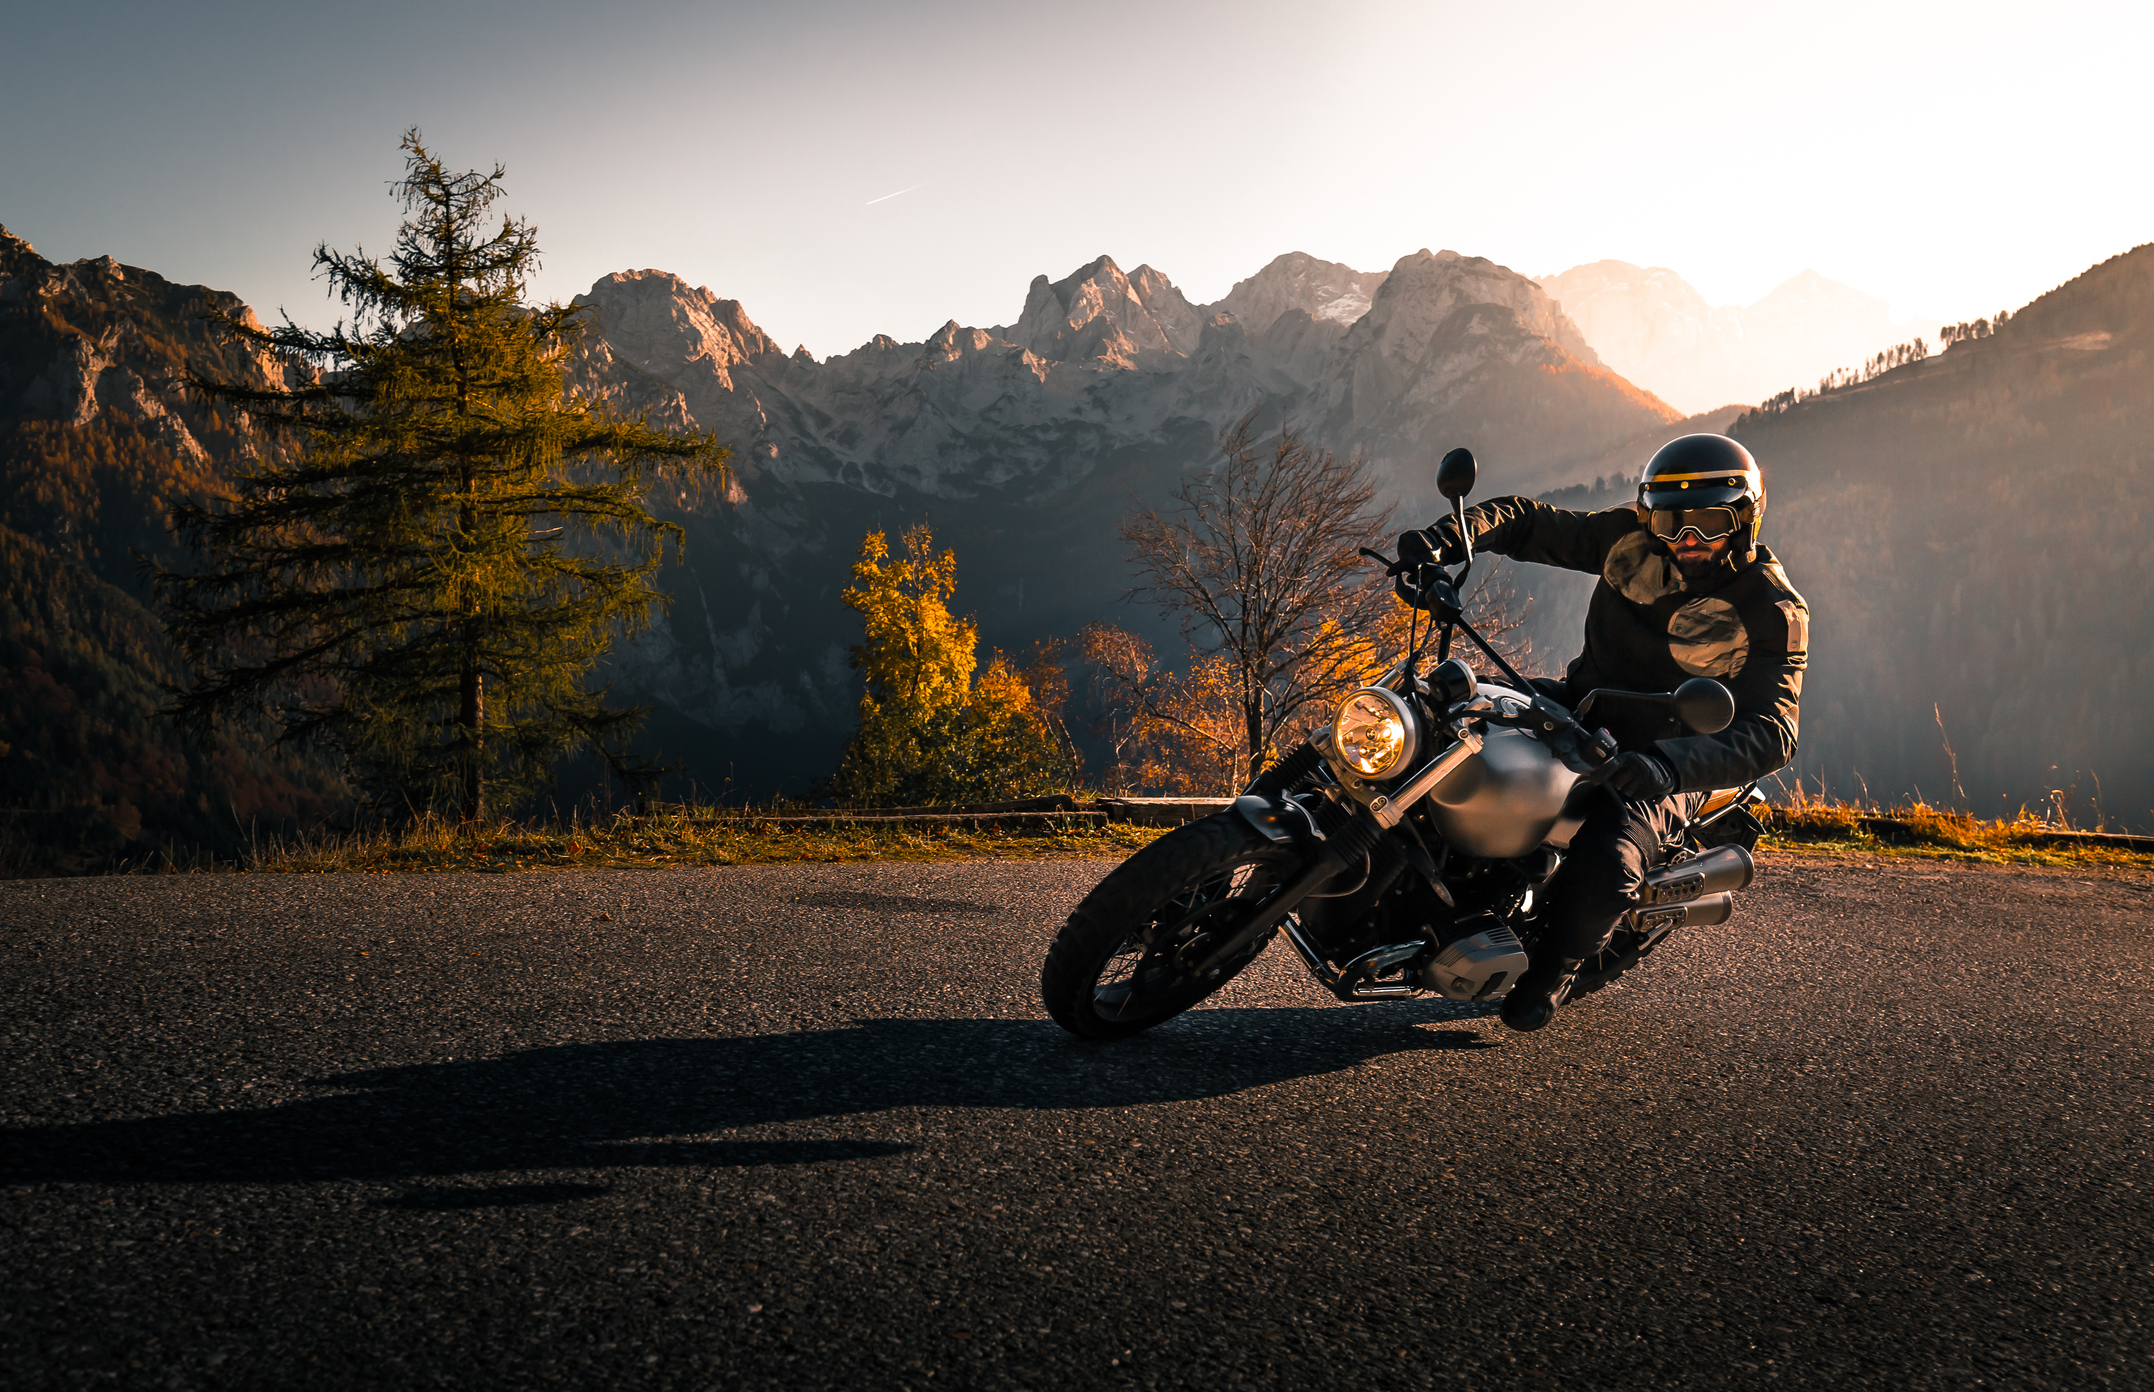 Motorradfahrer mit Helm und Schutzbrille legt sich beim Motorradfahren in eine Kurve